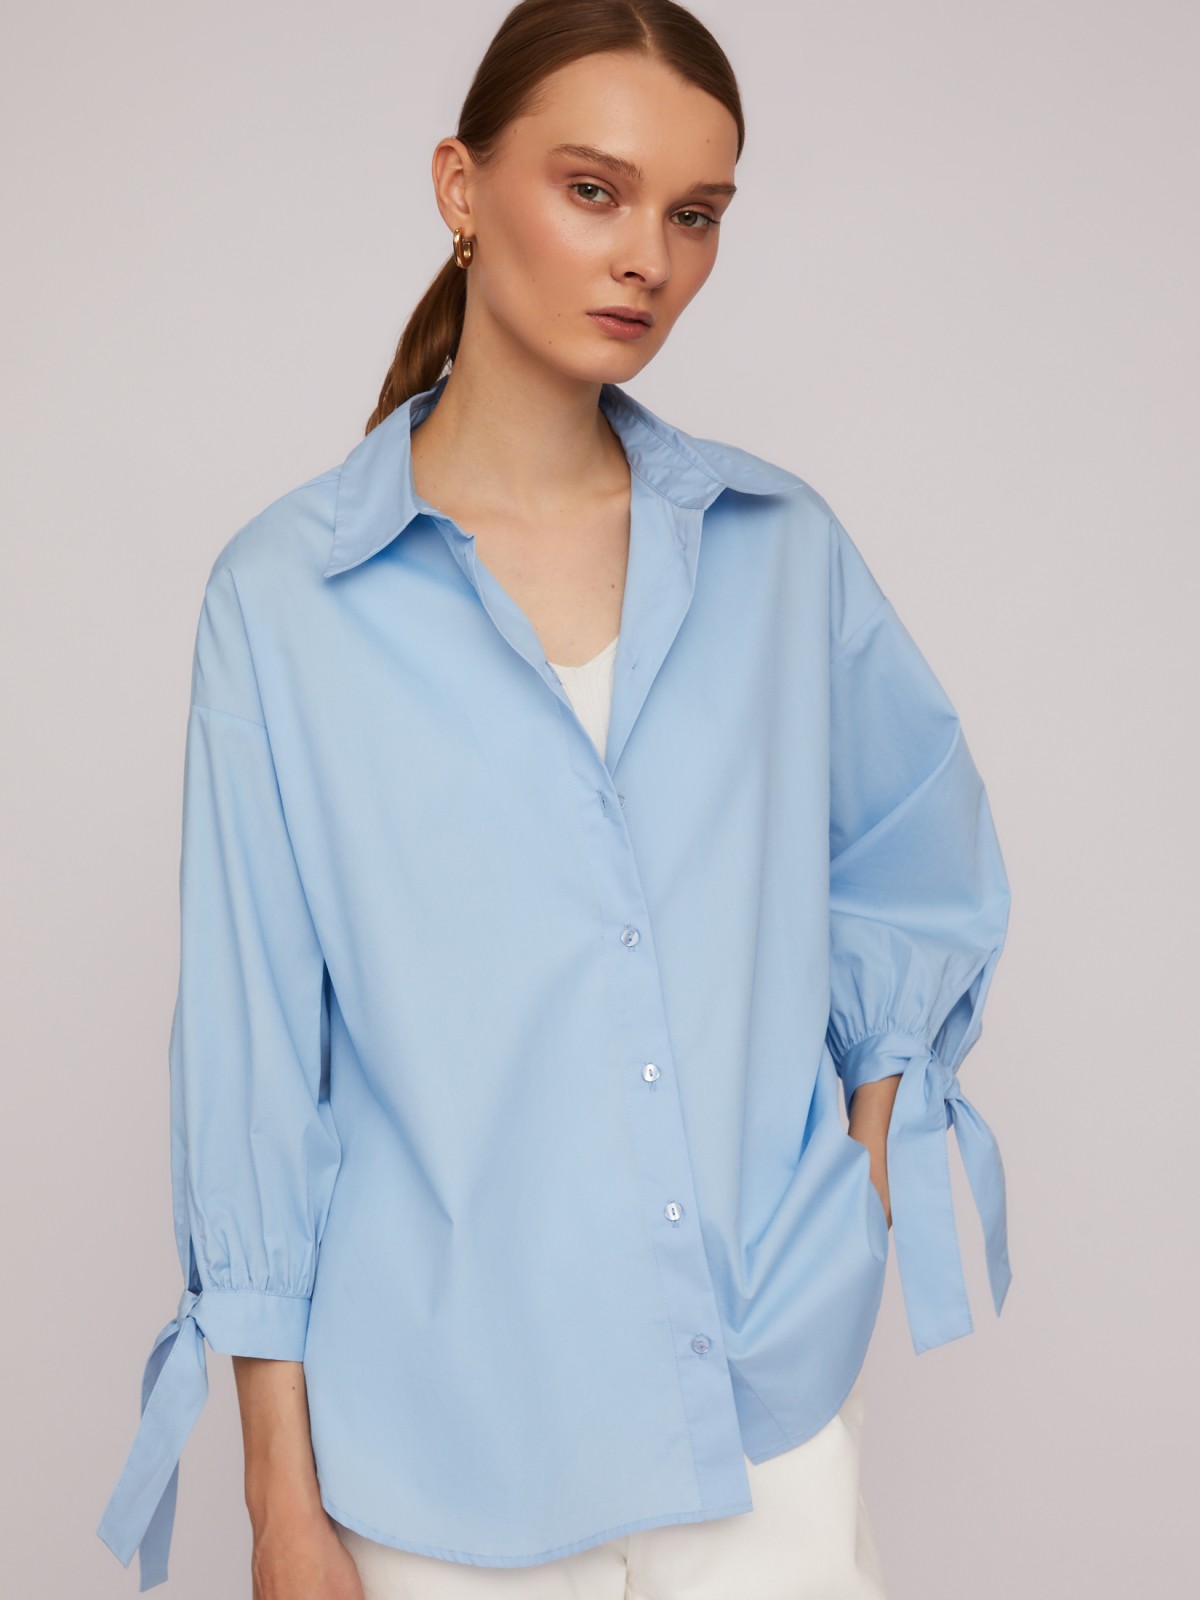 Рубашка из хлопка оверсайз силуэта с акцентными манжетами zolla 024211159033, цвет голубой, размер M - фото 5